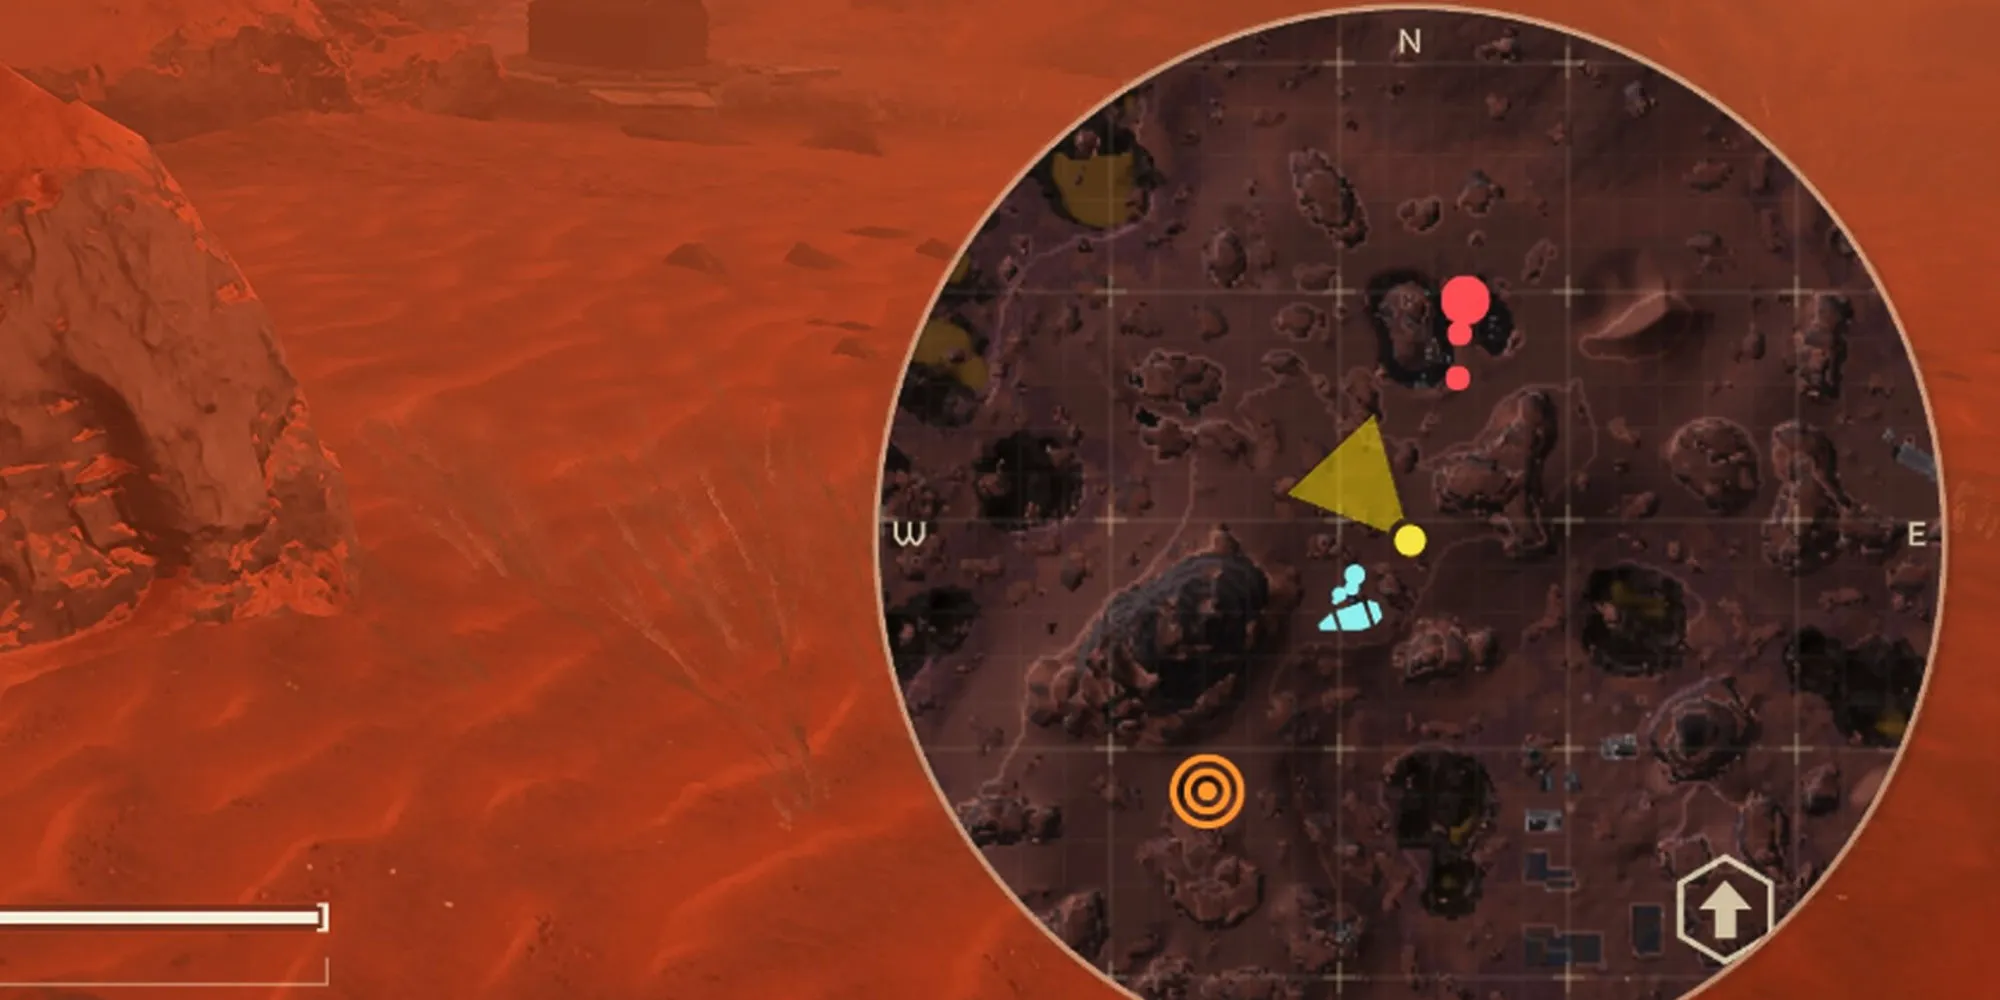 《地狱潜伏者2》地图和雷达的放大图片。北方指示有一处敌人巡逻